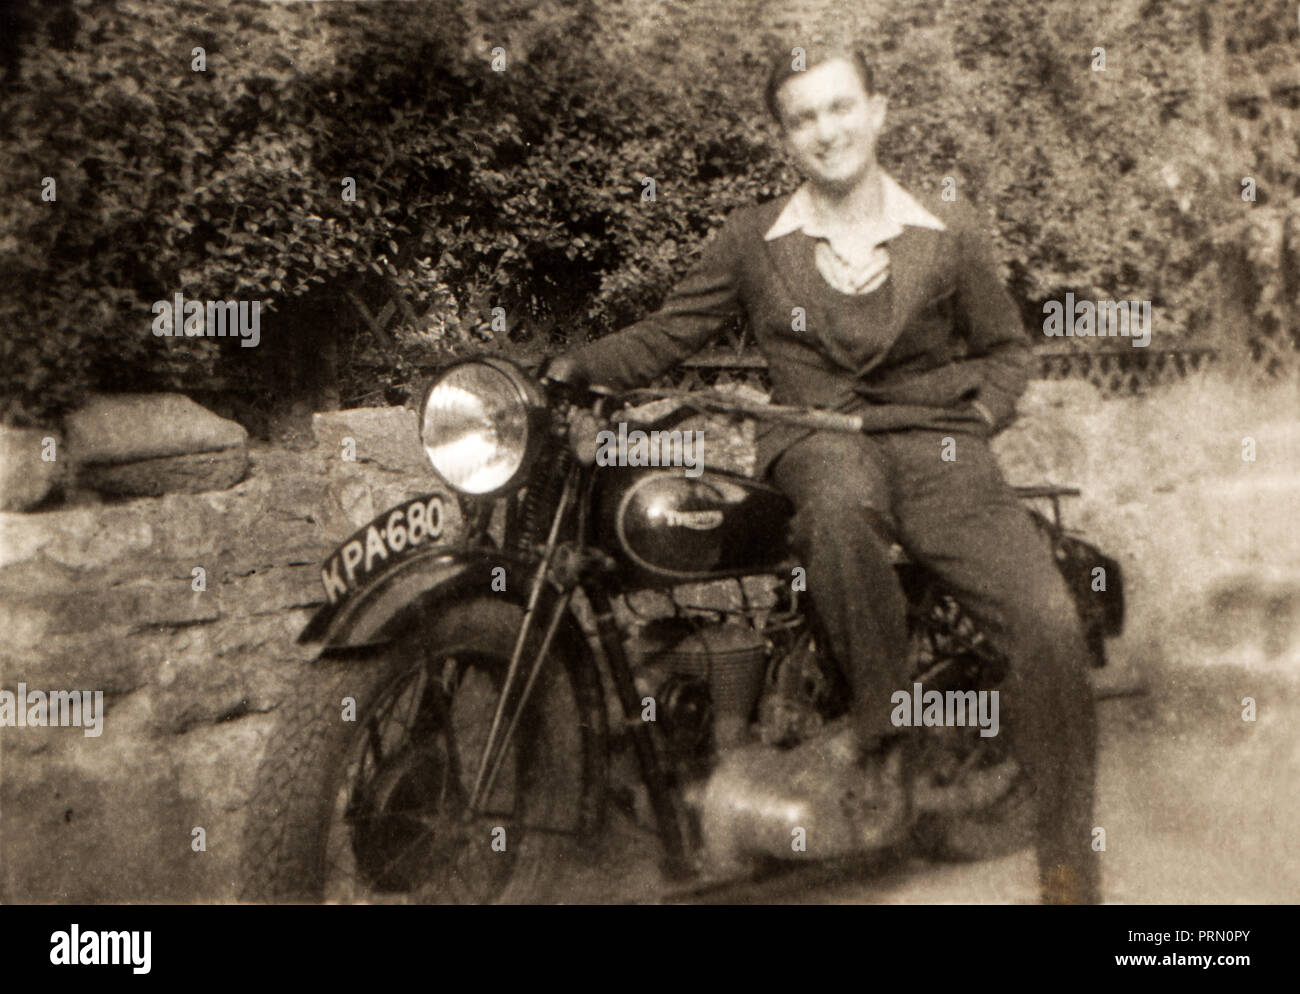 Mann sitzt auf seinem ca. 1938 Triumph 500 ein Motorrad, das Tragen von offenen Neck Shirt, Ende 1930er Jahre Stockfoto